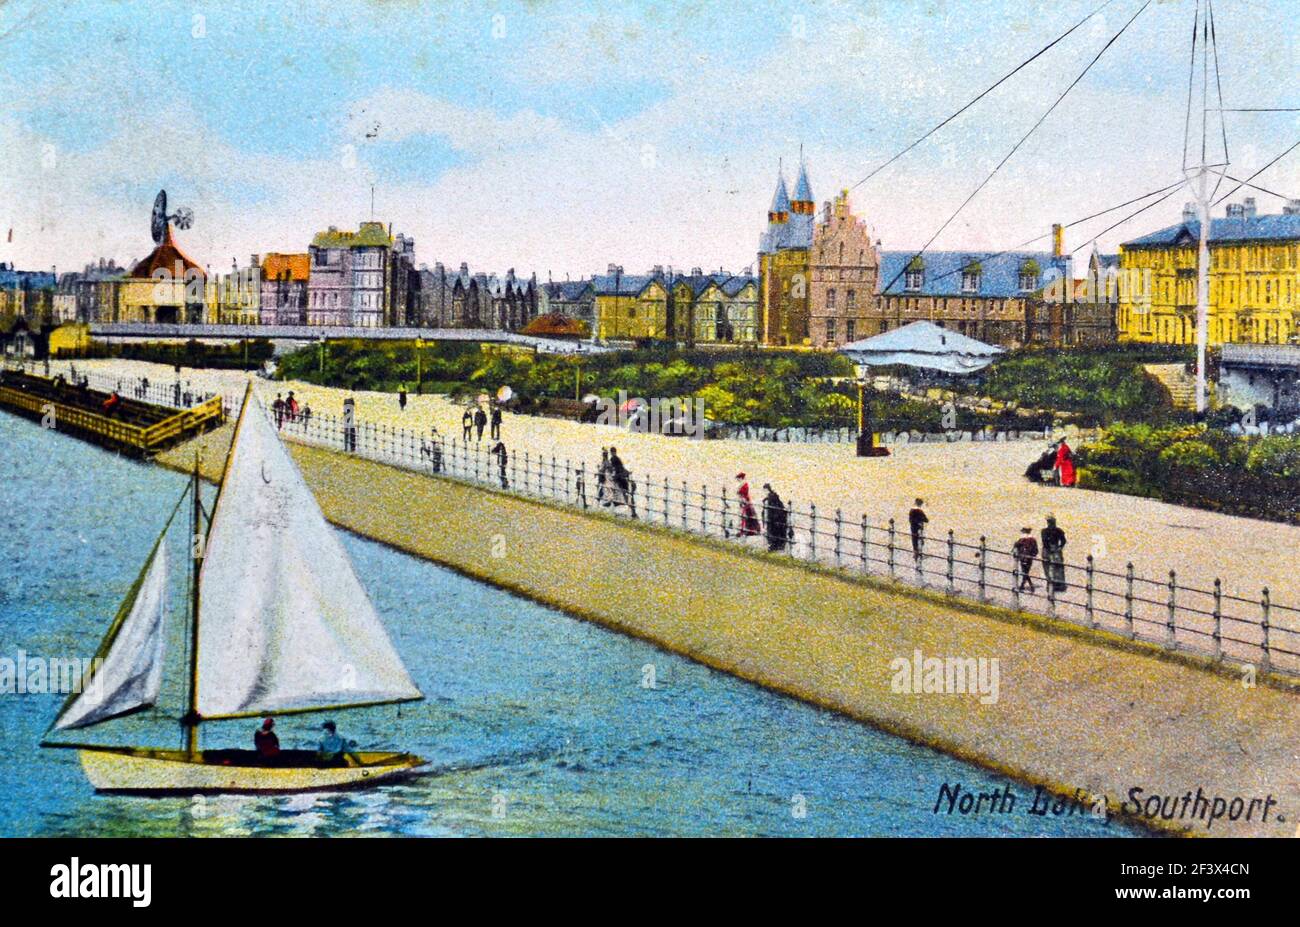 North Lake, Southport, Angleterre, Royaume-Uni. Carte postale ancienne. Éditeur : inconnu. Utilisé postally 1909. Banque D'Images